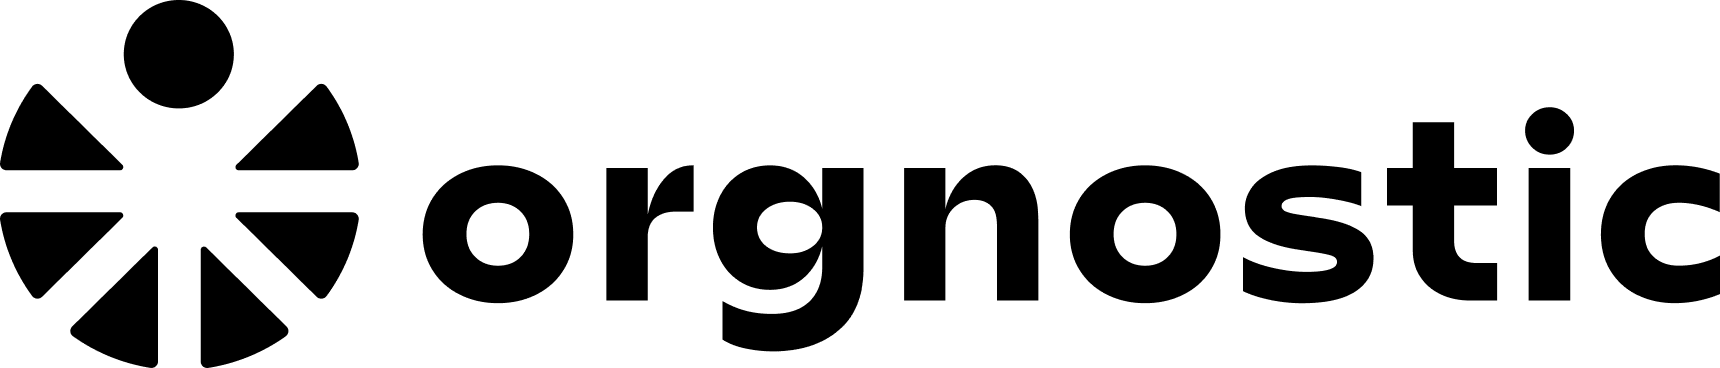 Orgnostic logo - black.png